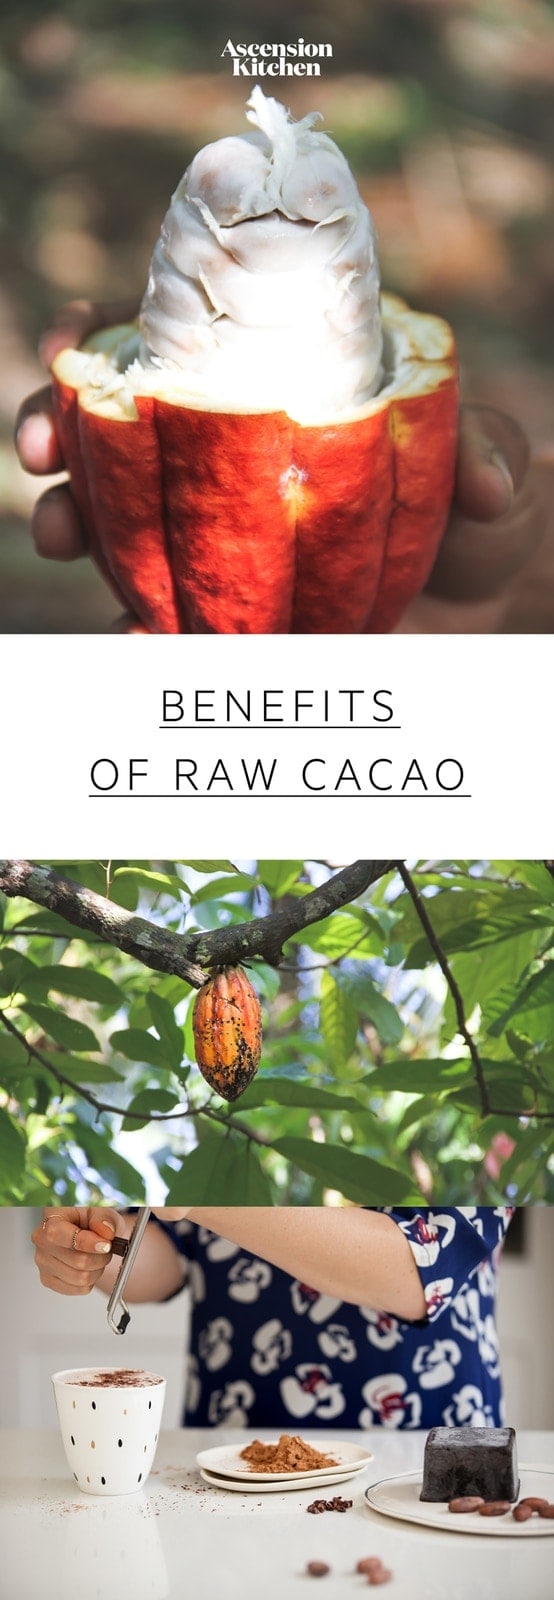 Nutrition hälsofördelar med kakao: lär dig hur rå kakao skiljer sig från kakao varför kakao är så fördelaktigt. # benefitscacao # cacaobenefits #cacaonutrition #cacaopowderbenefits #rawcacaopowder #cacaopowderrecipes #superfoods # AscensionKitchen